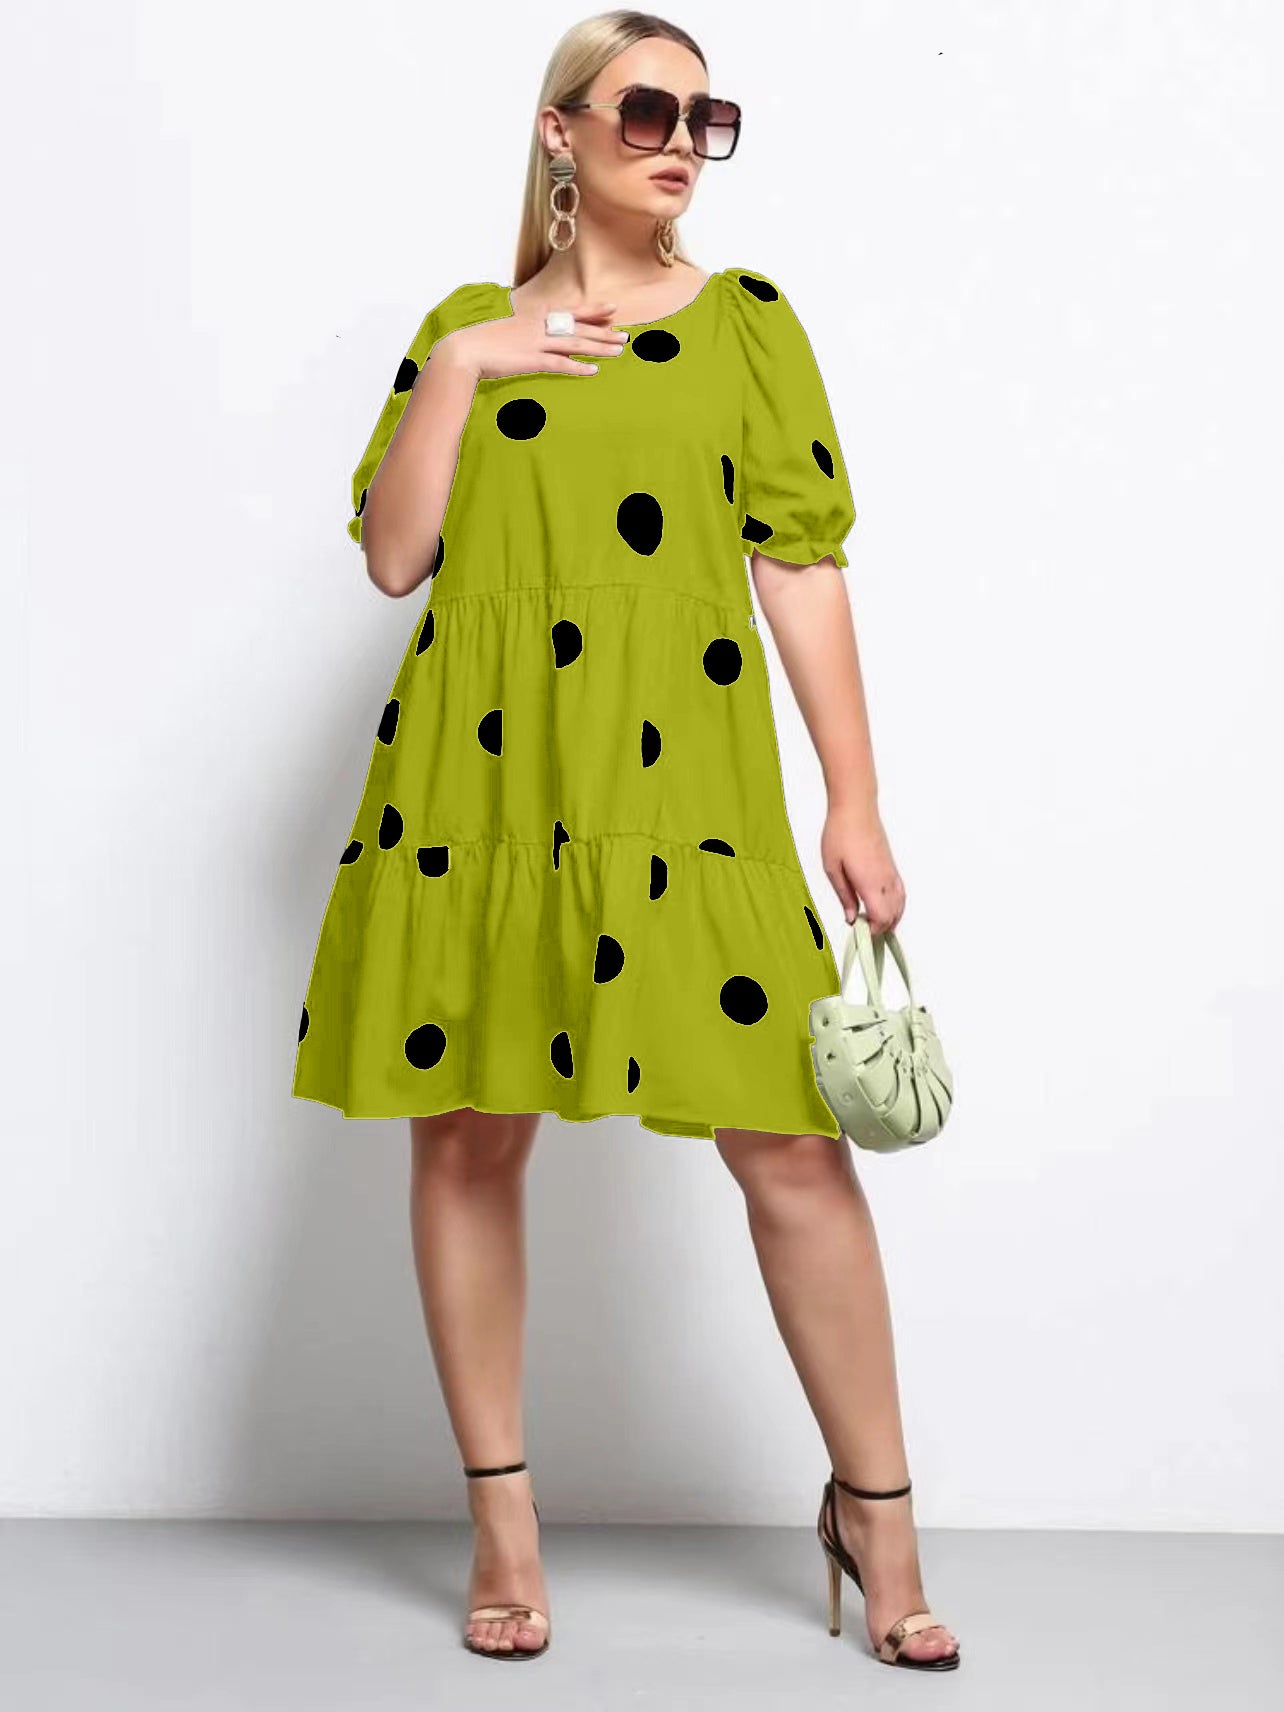 Polka Dot Babydoll Plus Size Dress